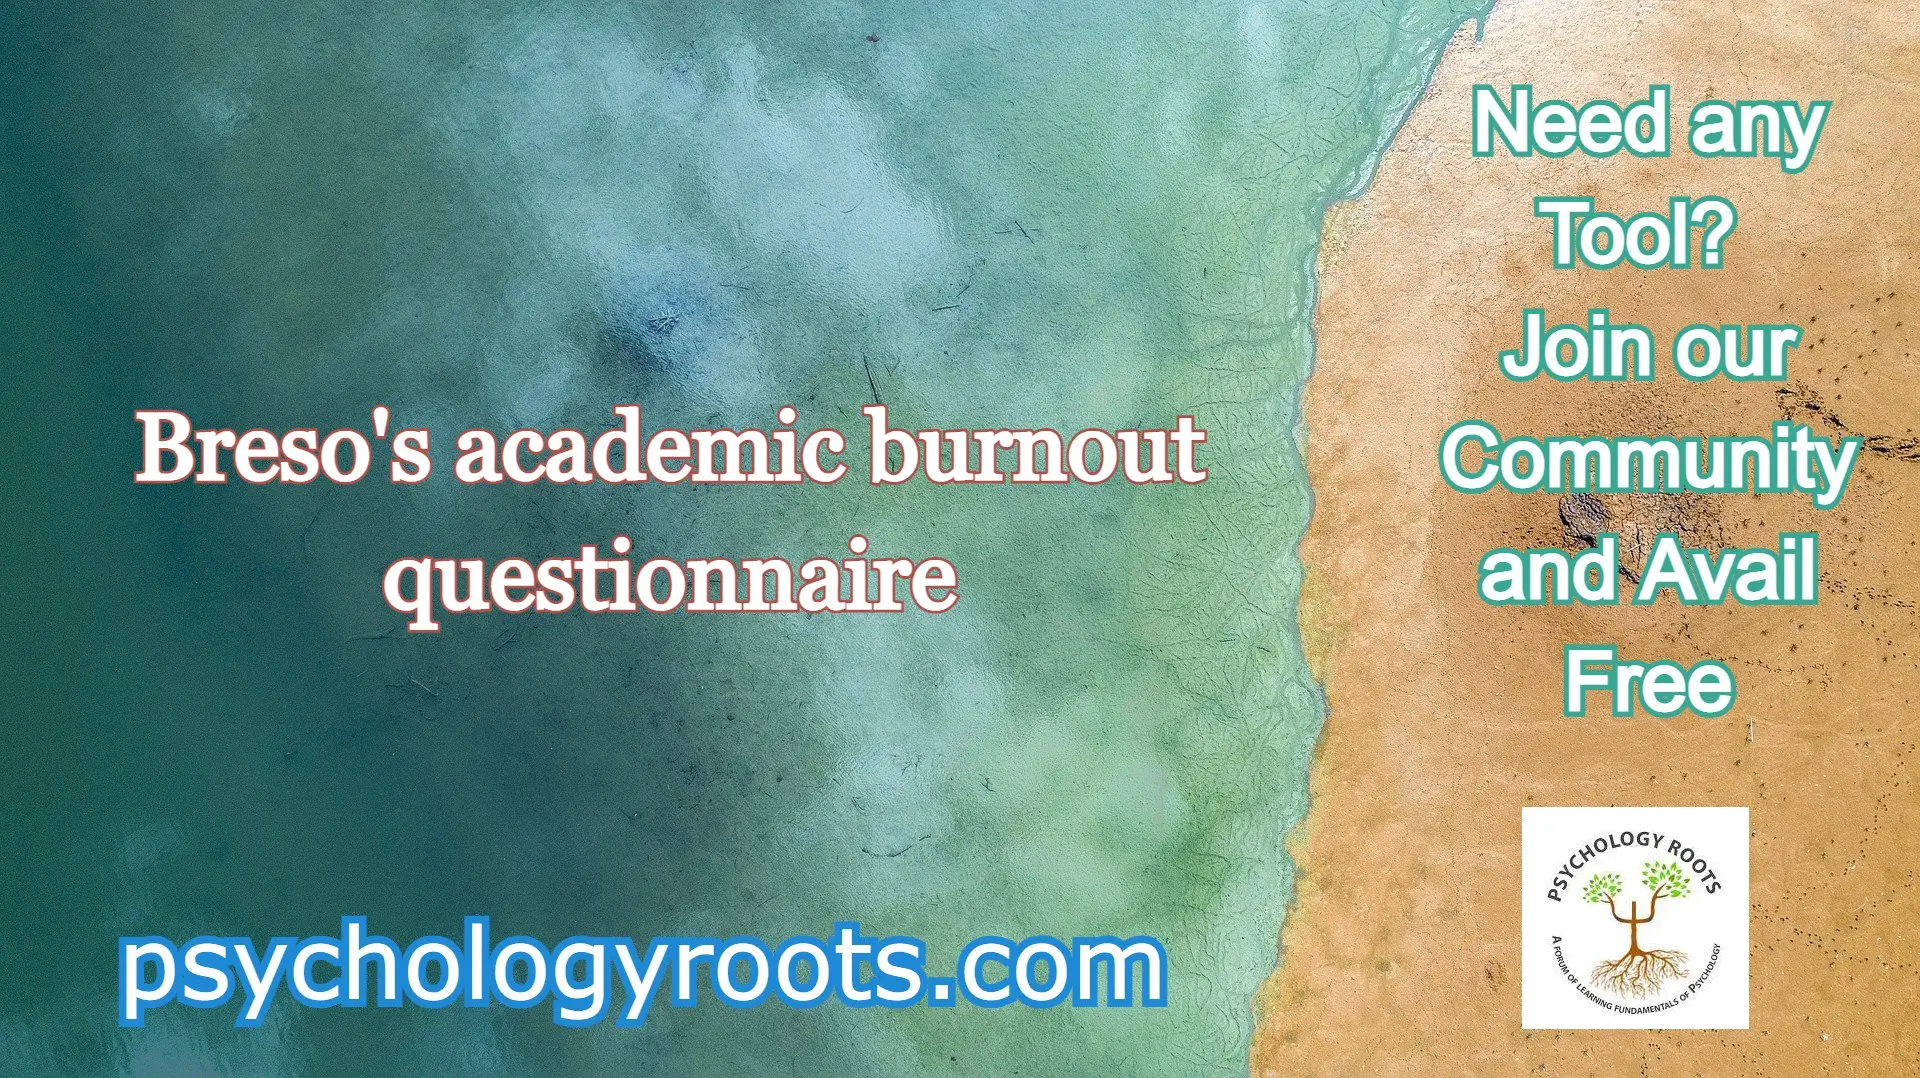 Breso's academic burnout questionnaire